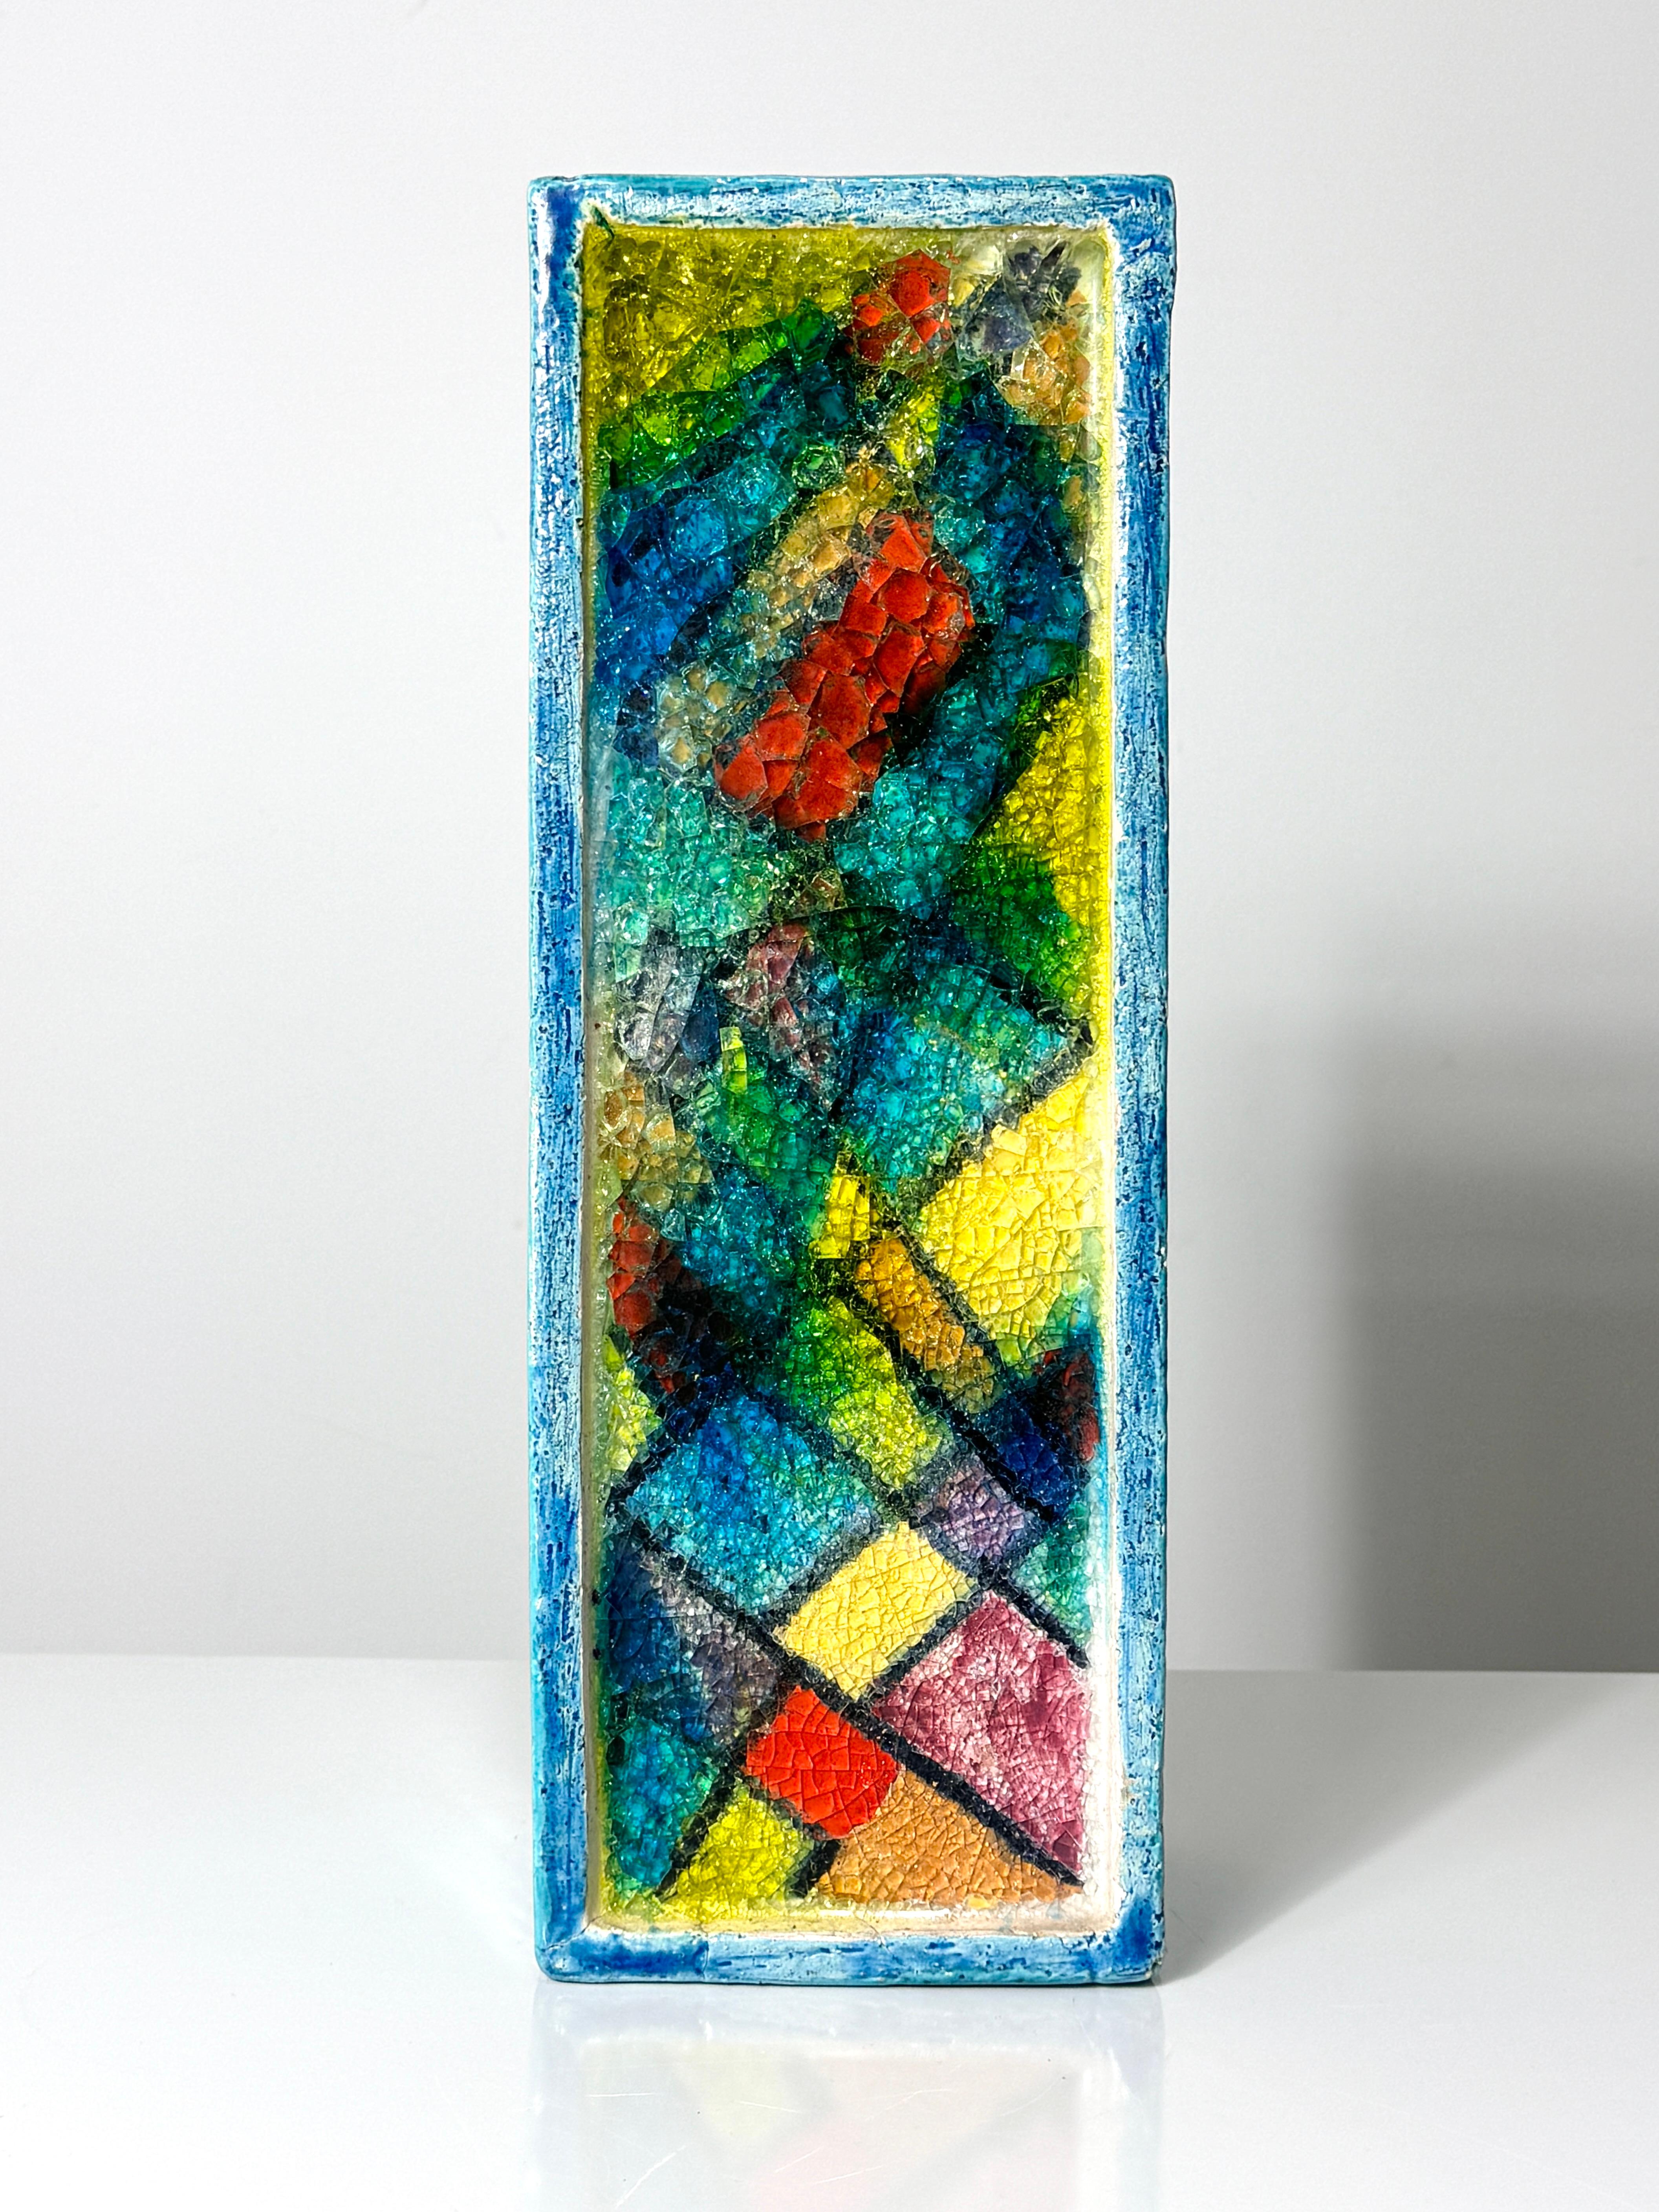 Seltene rechteckige Vase Fritte von Aldo Londi für Bitossi um 1960

Buntes modernistisches Mosaik aus geschmolzenem Glas, eingelegt in eine aquablaue, glasierte Keramikplatte in Form einer Vase

Signiert auf der Unterseite mit intaktem